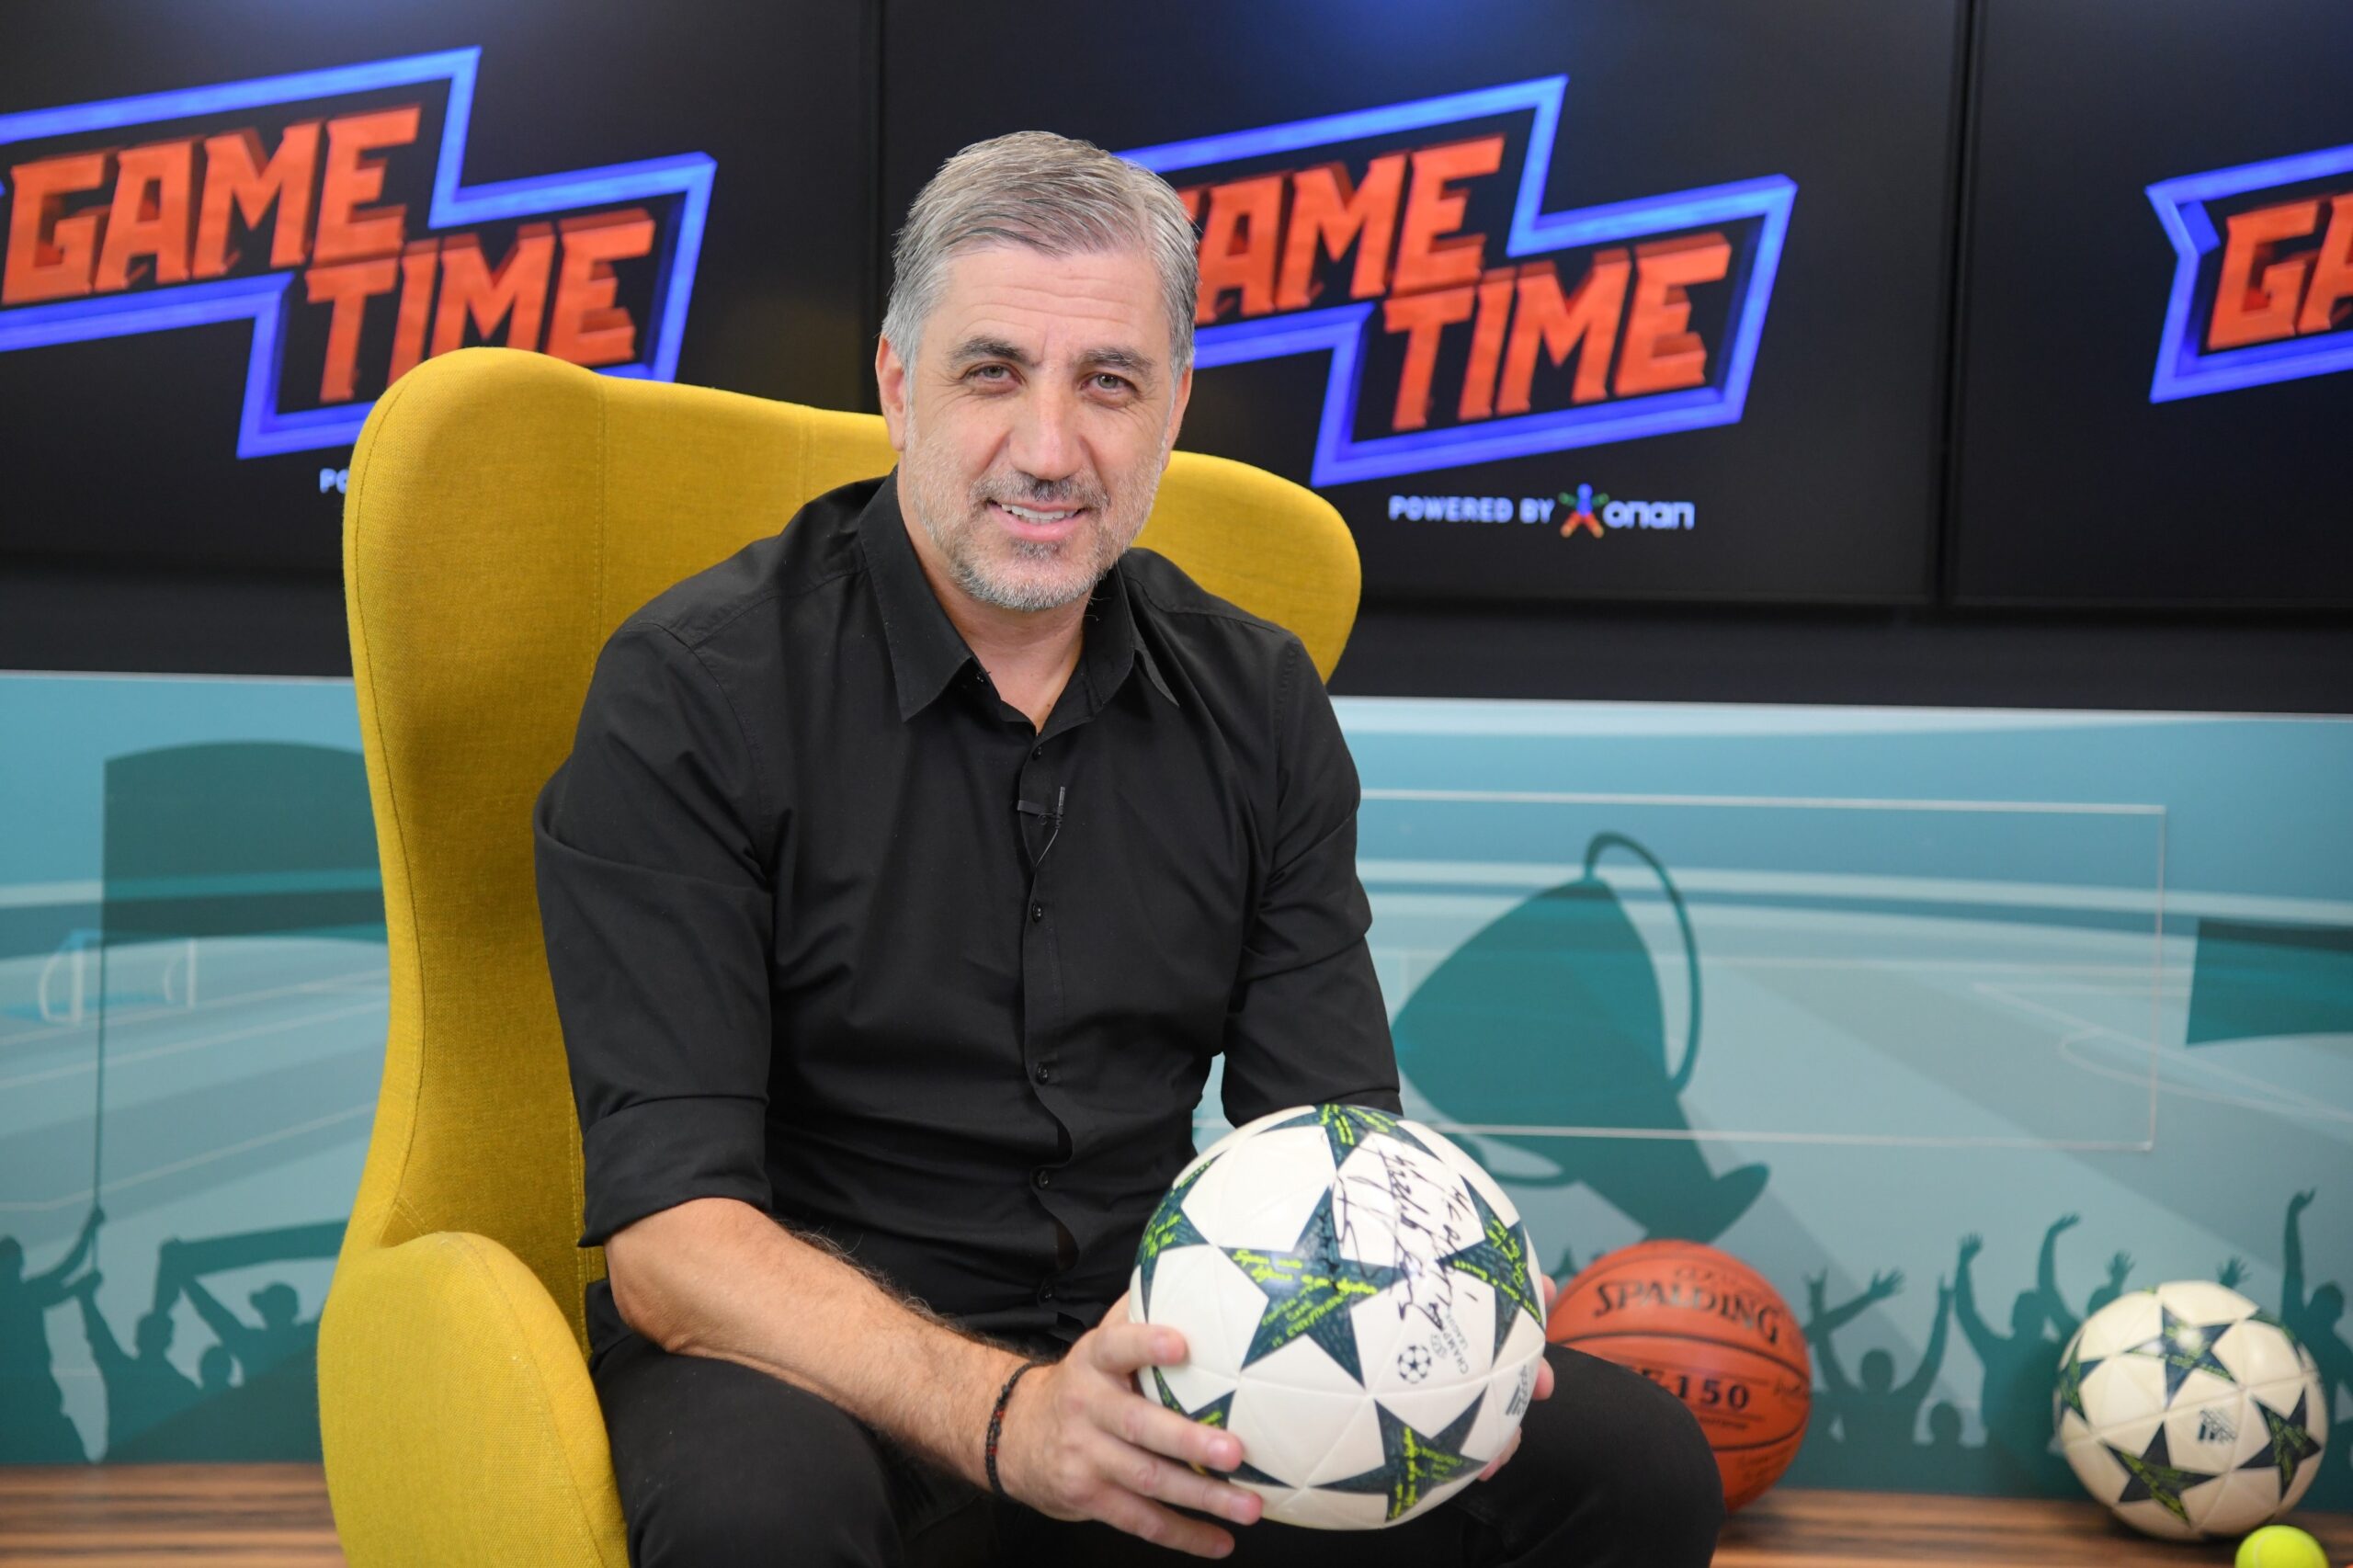 ΟΠΑΠ Game Time: Τα μεγάλα ευρωπαϊκά ματς με τον Κώστα Κωνσταντινίδη 